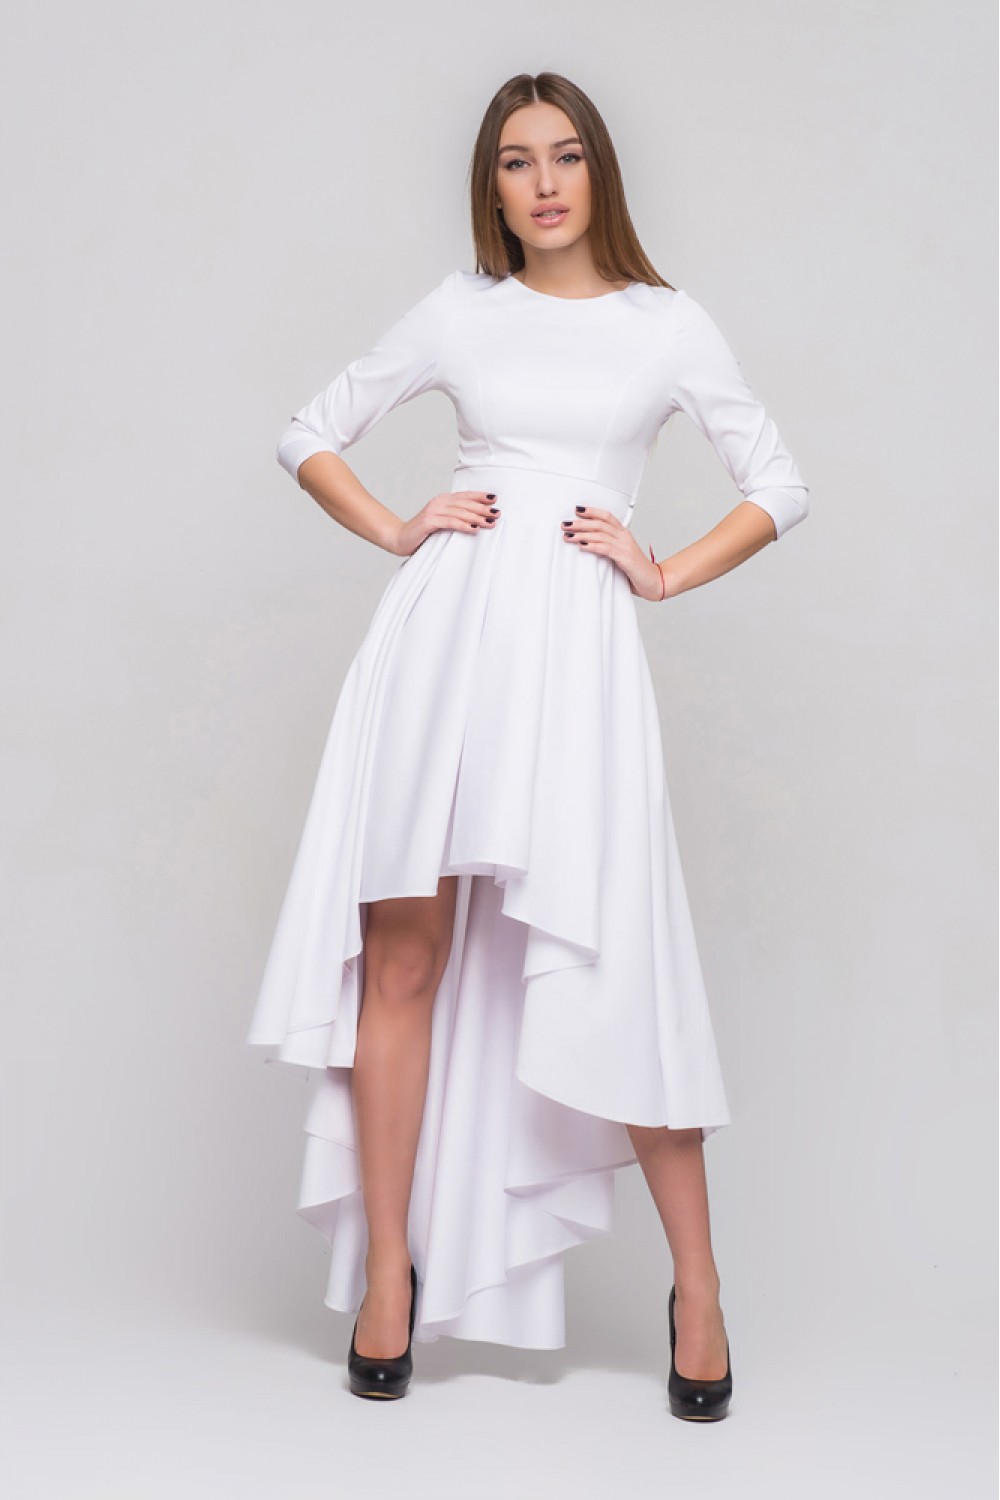 Белое платье спереди короткое сзади длинное